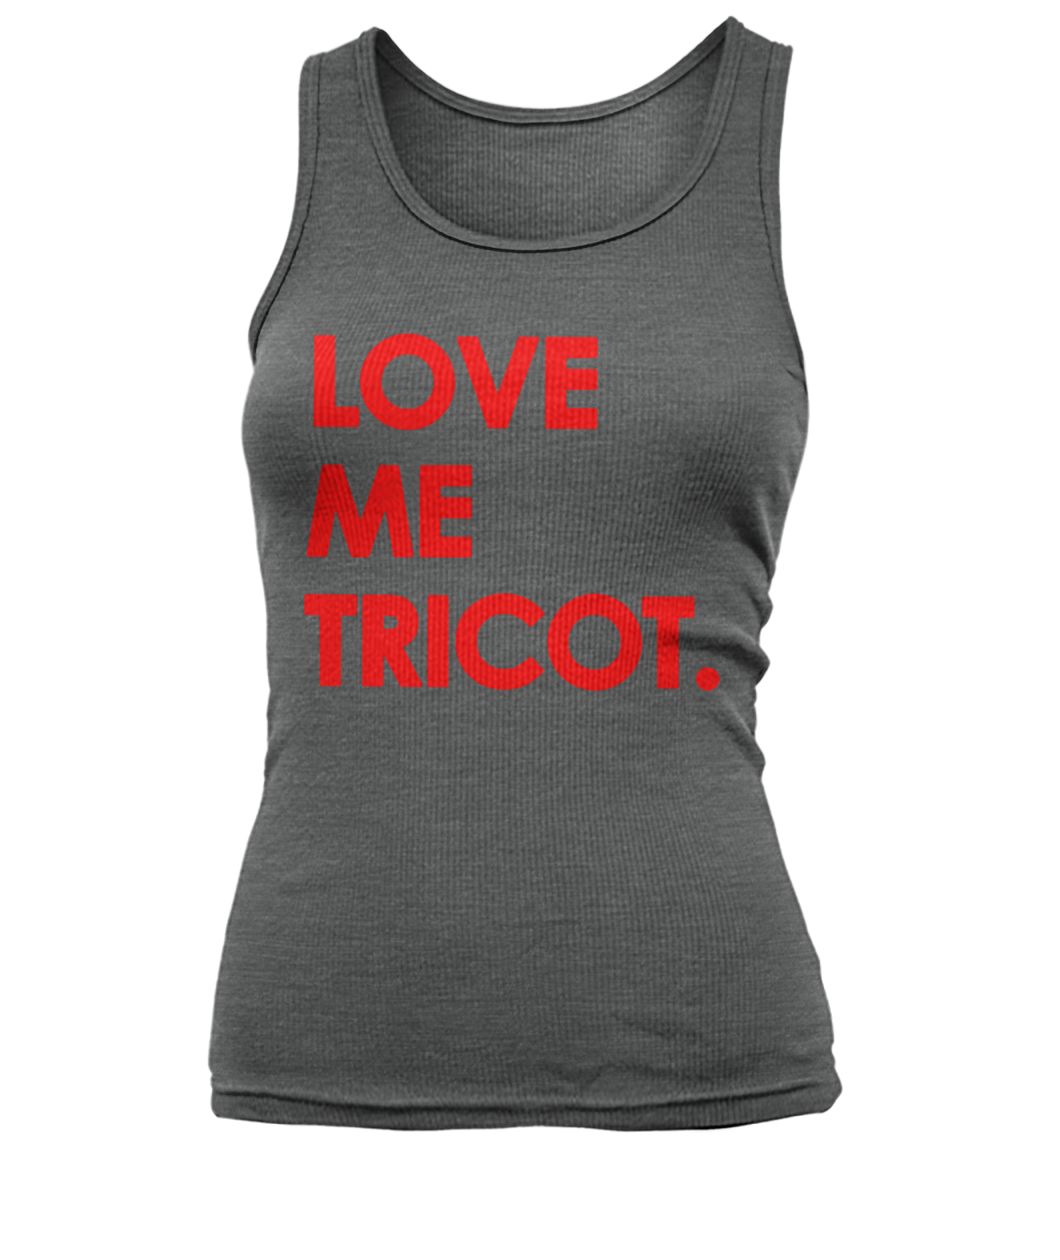 Love me tricot women's tank top